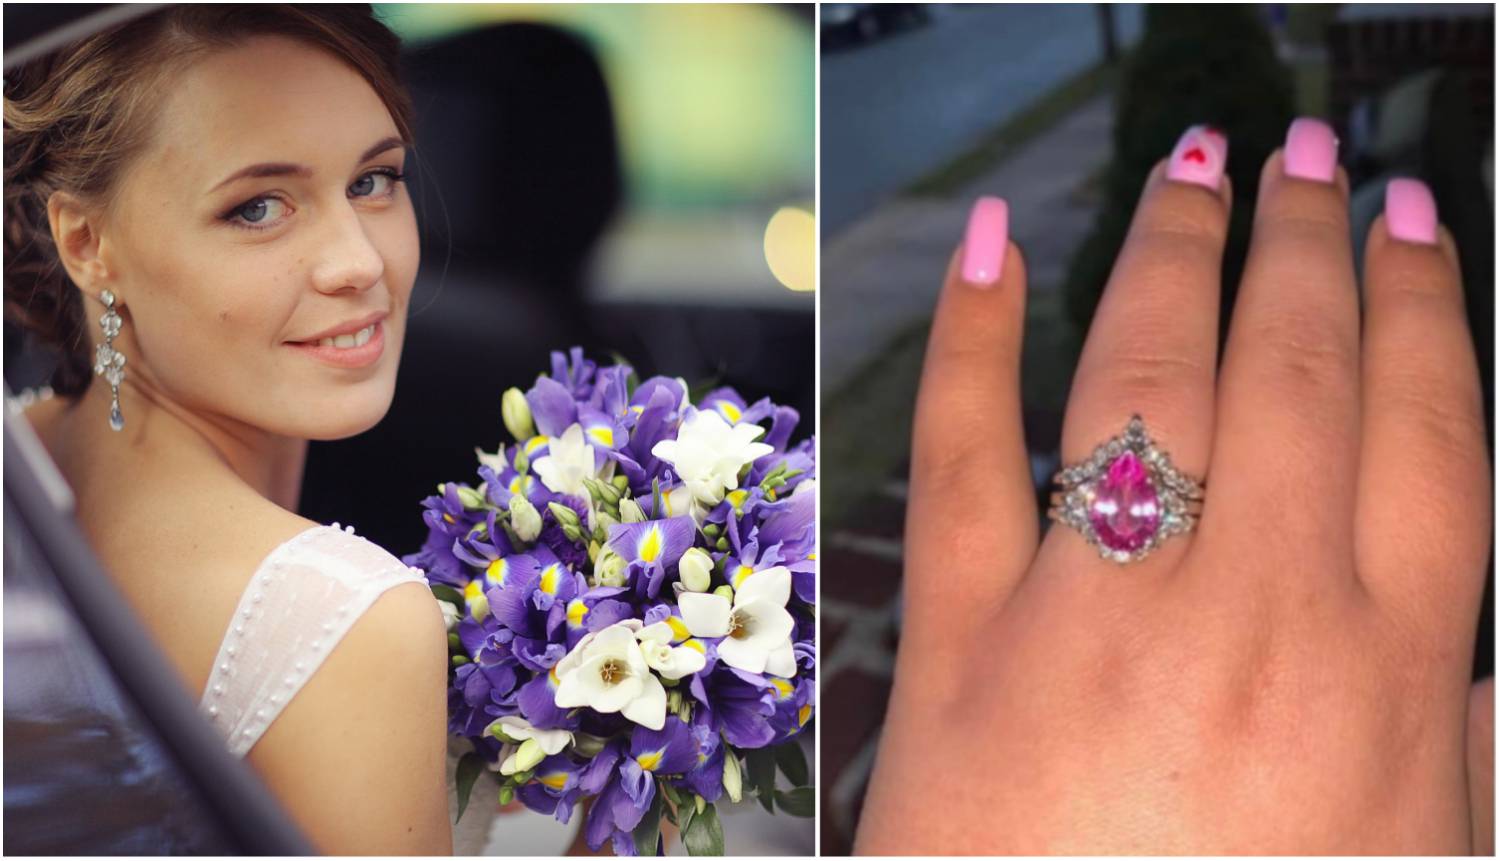 Mladenka ponosno pokazala vjenčani prsten: 'Djevojko vrati to u aparat za žvakaće gume...'